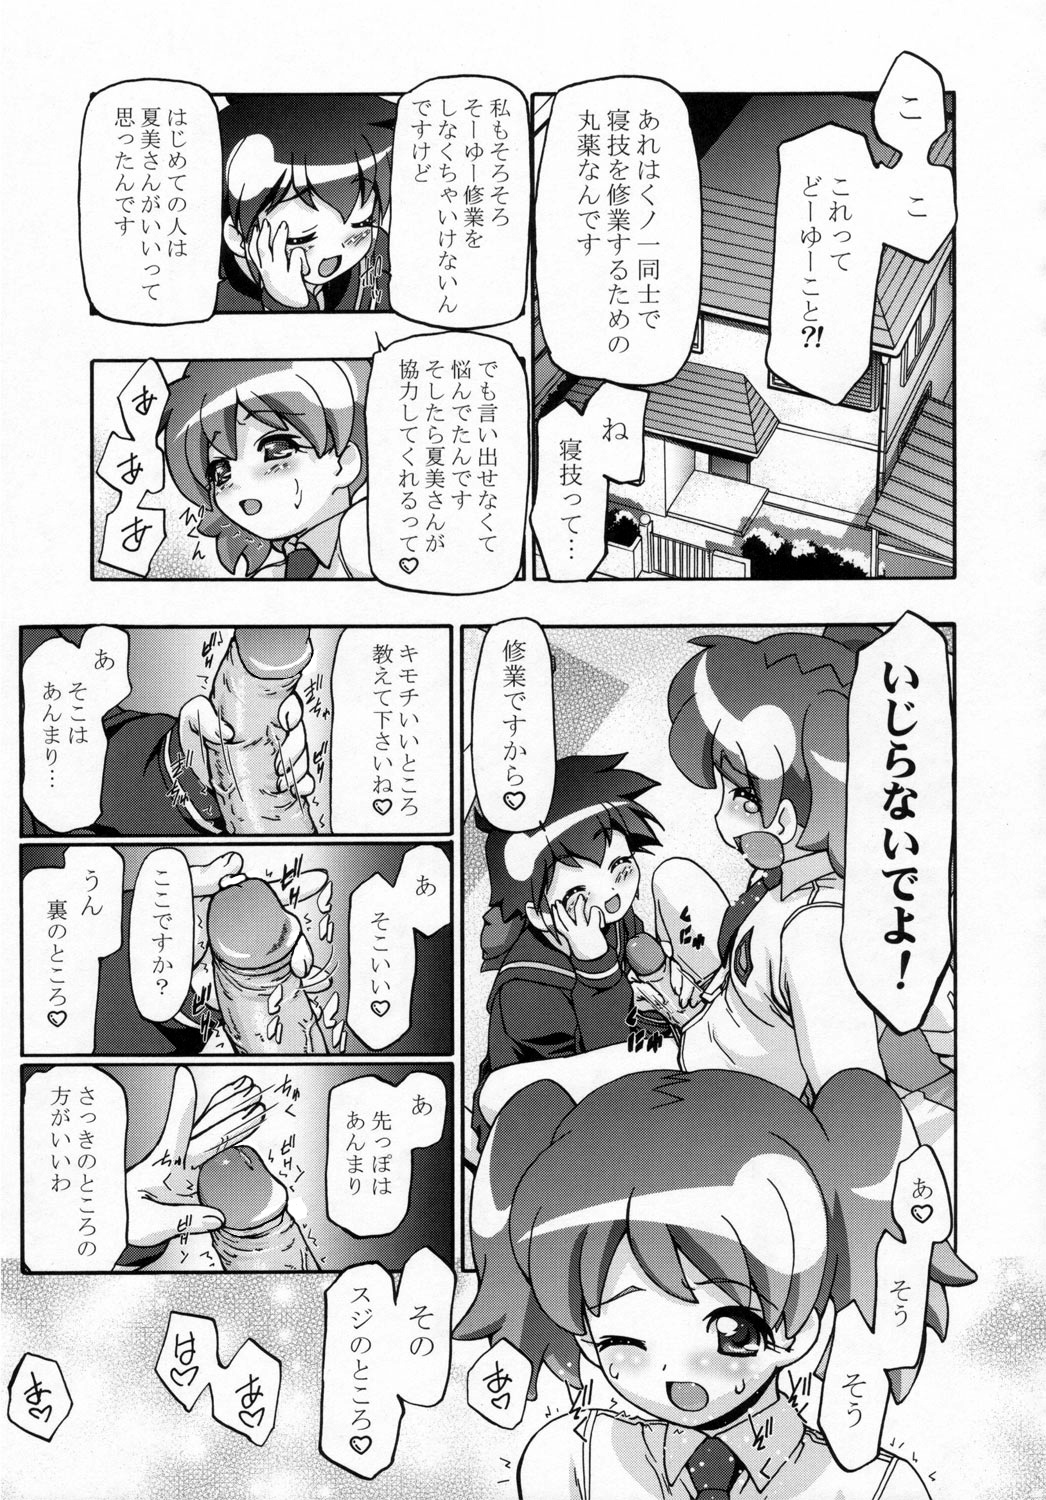 (SC31) [Gambler Club (Kousaka Jun)] Natsu Yuki - Summer Snow (Keroro Gunsou) page 6 full